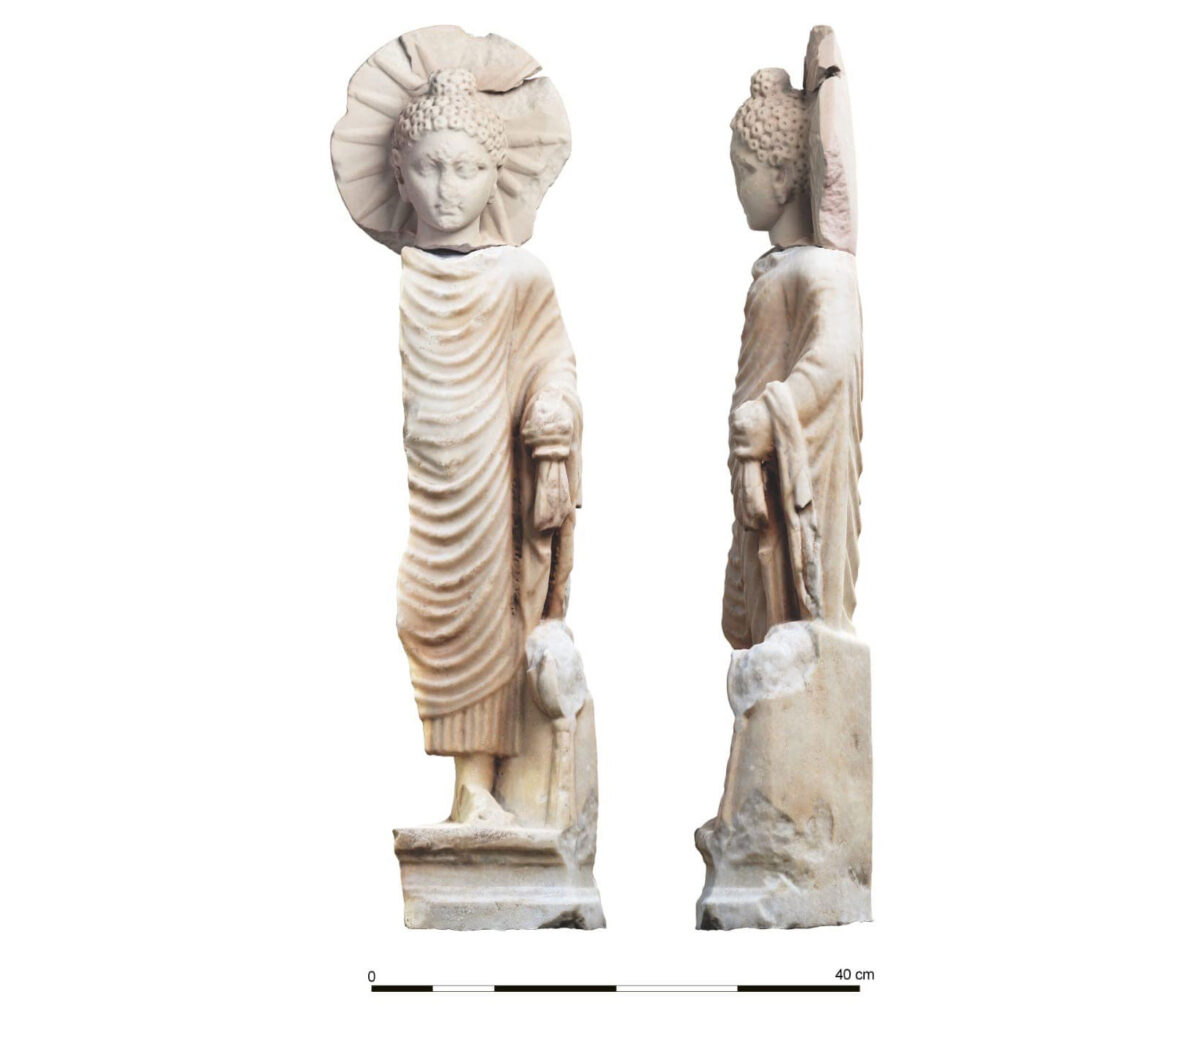 Το άγαλμα απεικονίζει τον Βούδα όρθιο, ενώ με το αριστερό χέρι κρατάει τμήμα του ιματίου του. Πηγή εικόνας: Υπουργείο Τουρισμού και Αρχαιοτήτων της Αιγύπτου.